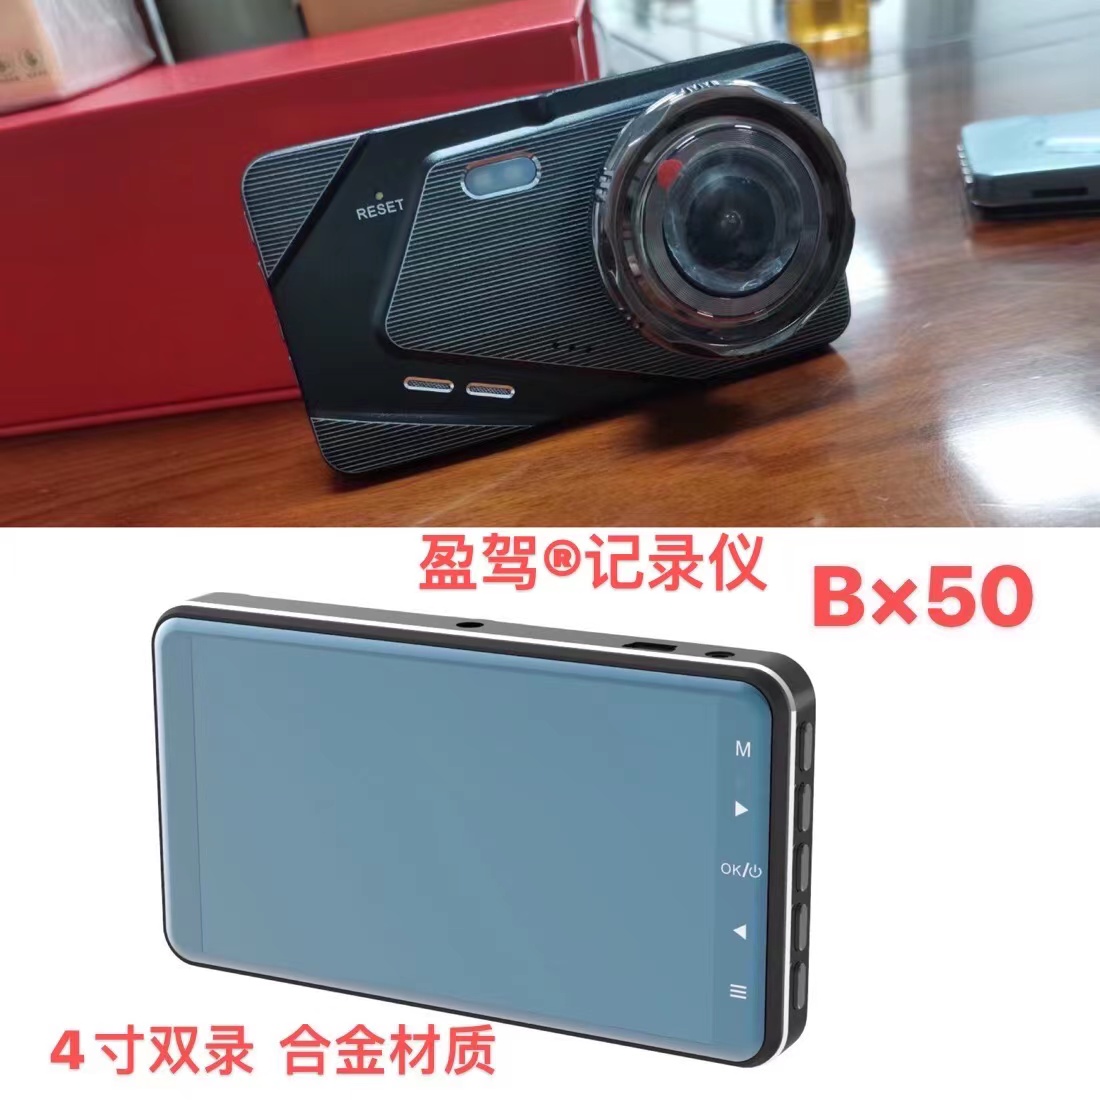 د وسایطو کیمره --YJ برانډ -- نوی محصول -- BX50 معرفي شو